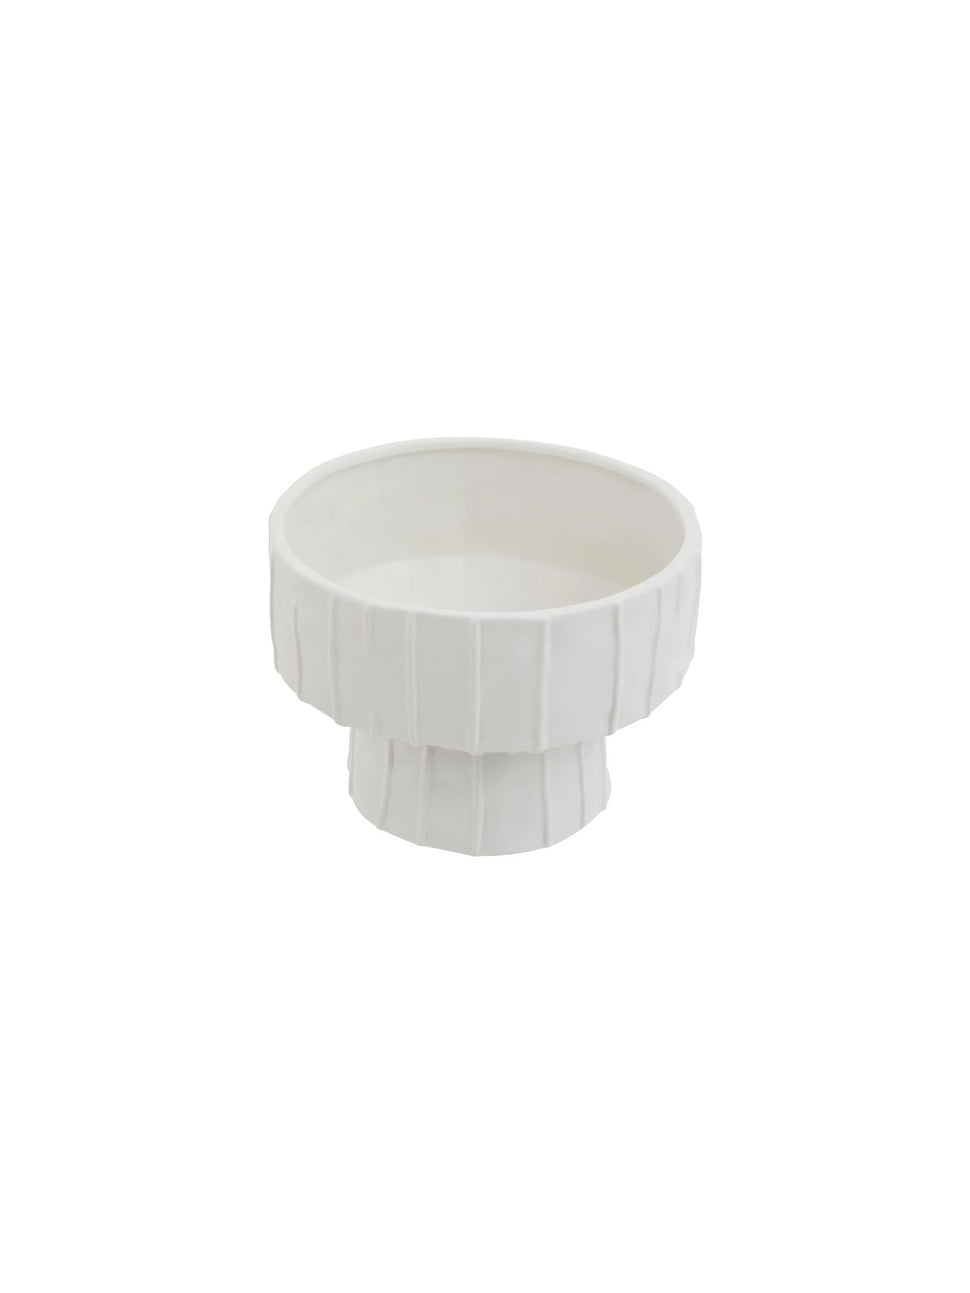 white pedestal bowl vase